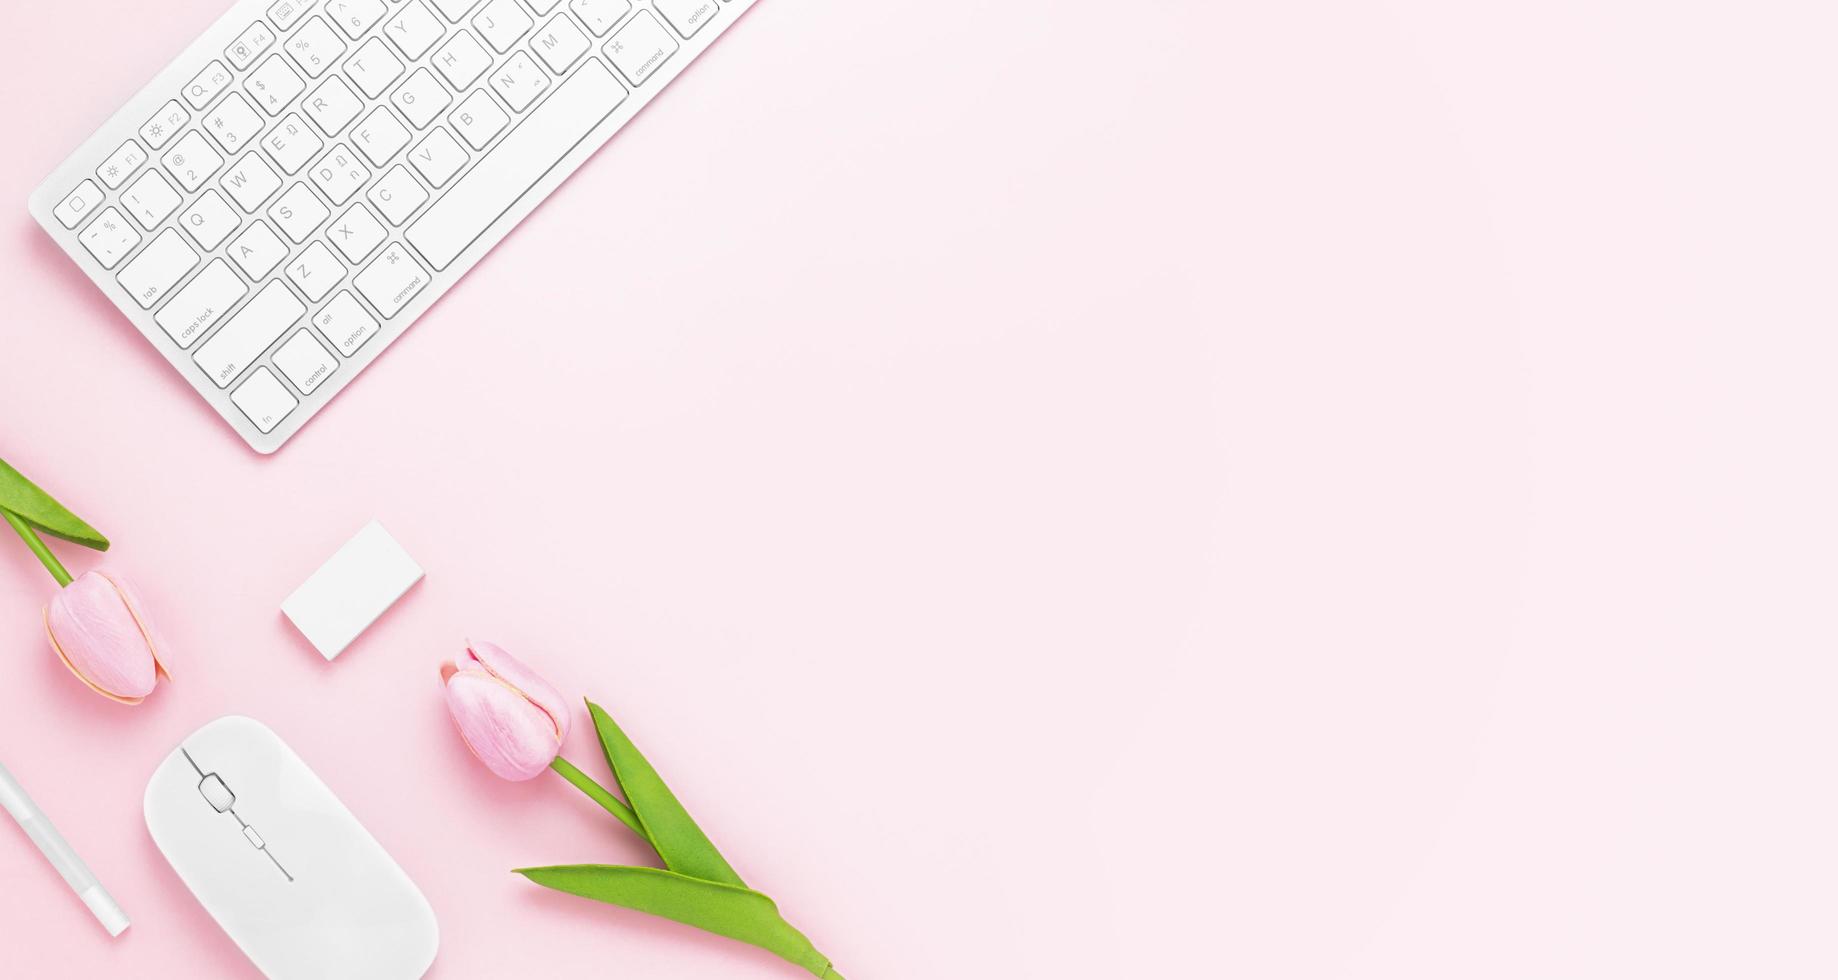 minimale bureautafel met toetsenbordcomputer, muis, witte pen, tulp bloemen, gum op een roze pasteltafel met kopie ruimte voor het invoeren van uw tekst, roze kleur werkplekcompositie, plat leggen, bovenaanzicht foto